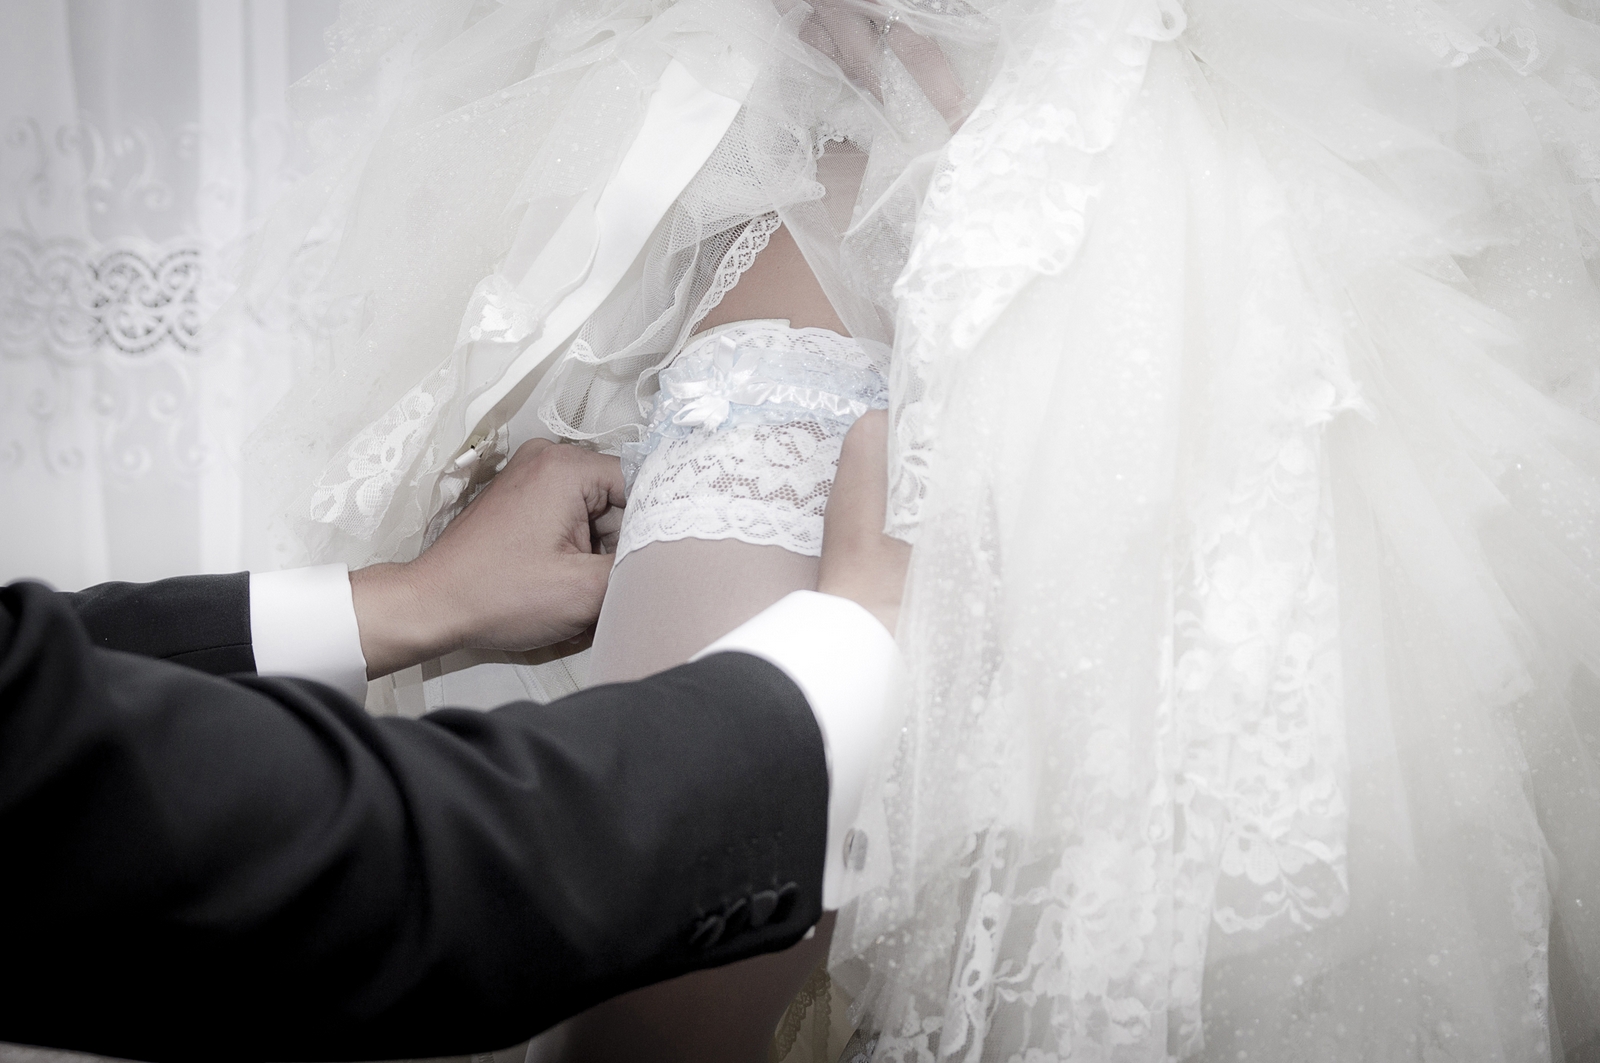 Fotograf z warszawy robi zdjęcia zapinania koszuli ślubnej pana młodego w trakcie przygotowań ślubnych